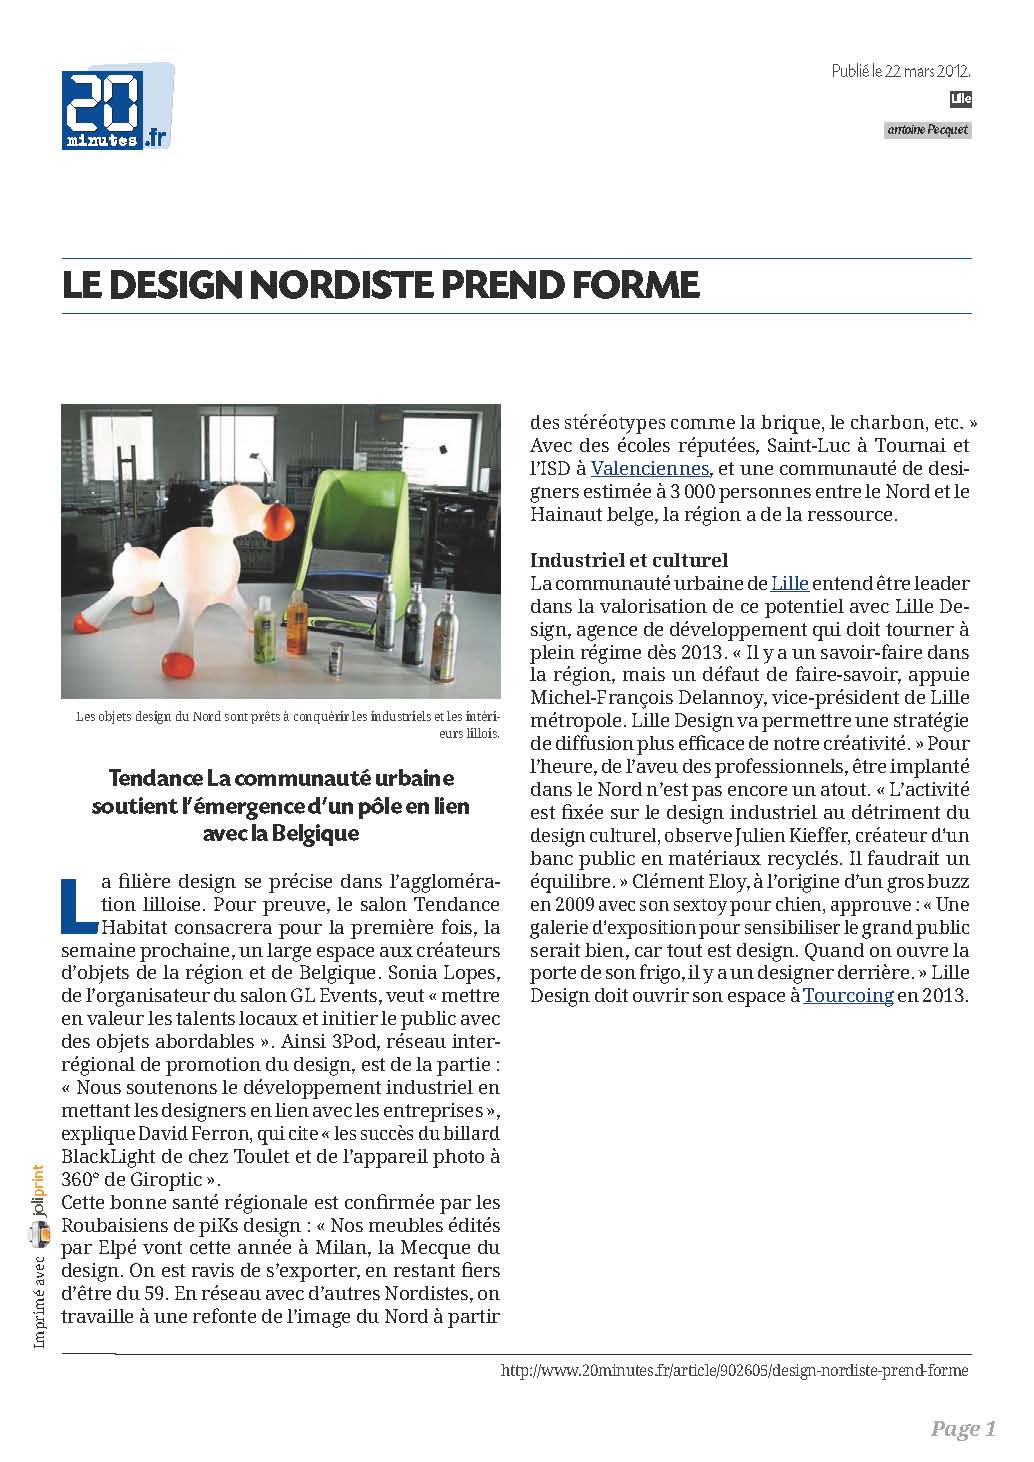 Presse-article-Billards-toulet-20minutes.fr-le-design-nordiste-prend-forme